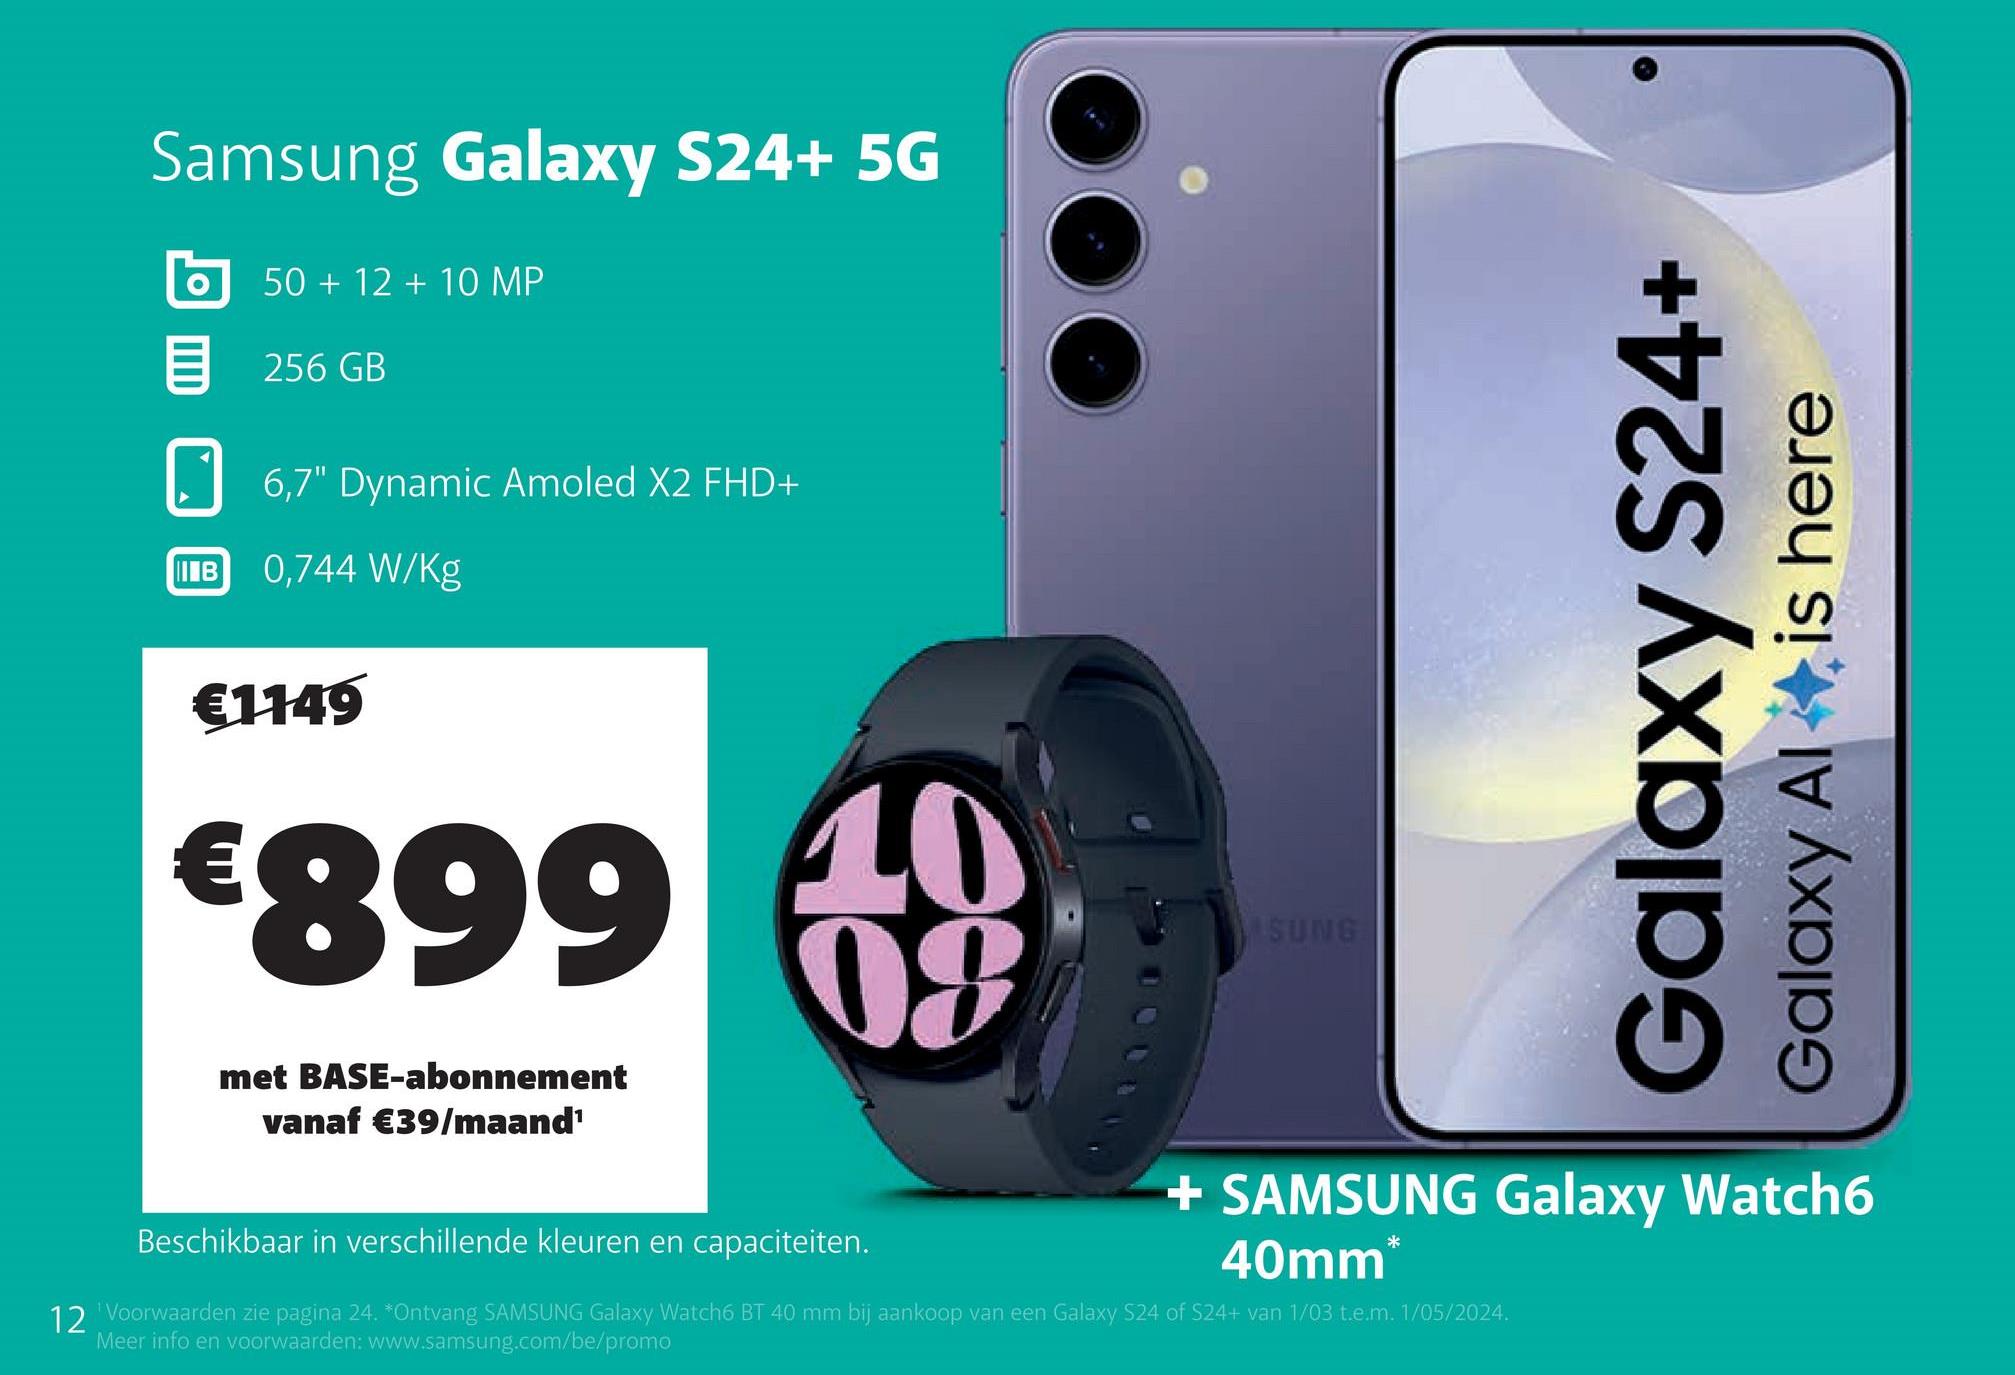 Samsung Galaxy S24+ 5G
50+12+10 MP
目 256 GB
6,7" Dynamic Amoled X2 FHD+
IB
0,744 W/kg
€1149
€899
met BASE-abonnement
vanaf €39/maand¹
10
09
Beschikbaar in verschillende kleuren en capaciteiten.
SUNG
Galaxy S24+
Galaxy Al
is here
+ SAMSUNG Galaxy Watch6
40mm*
12 'Voorwaarden zie pagina 24. *Ontvang SAMSUNG Galaxy Watch6 BT 40 mm bij aankoop van een Galaxy S24 of S24+ van 1/03 t.e.m. 1/05/2024.
Meer info en voorwaarden: www.samsung.com/be/promo